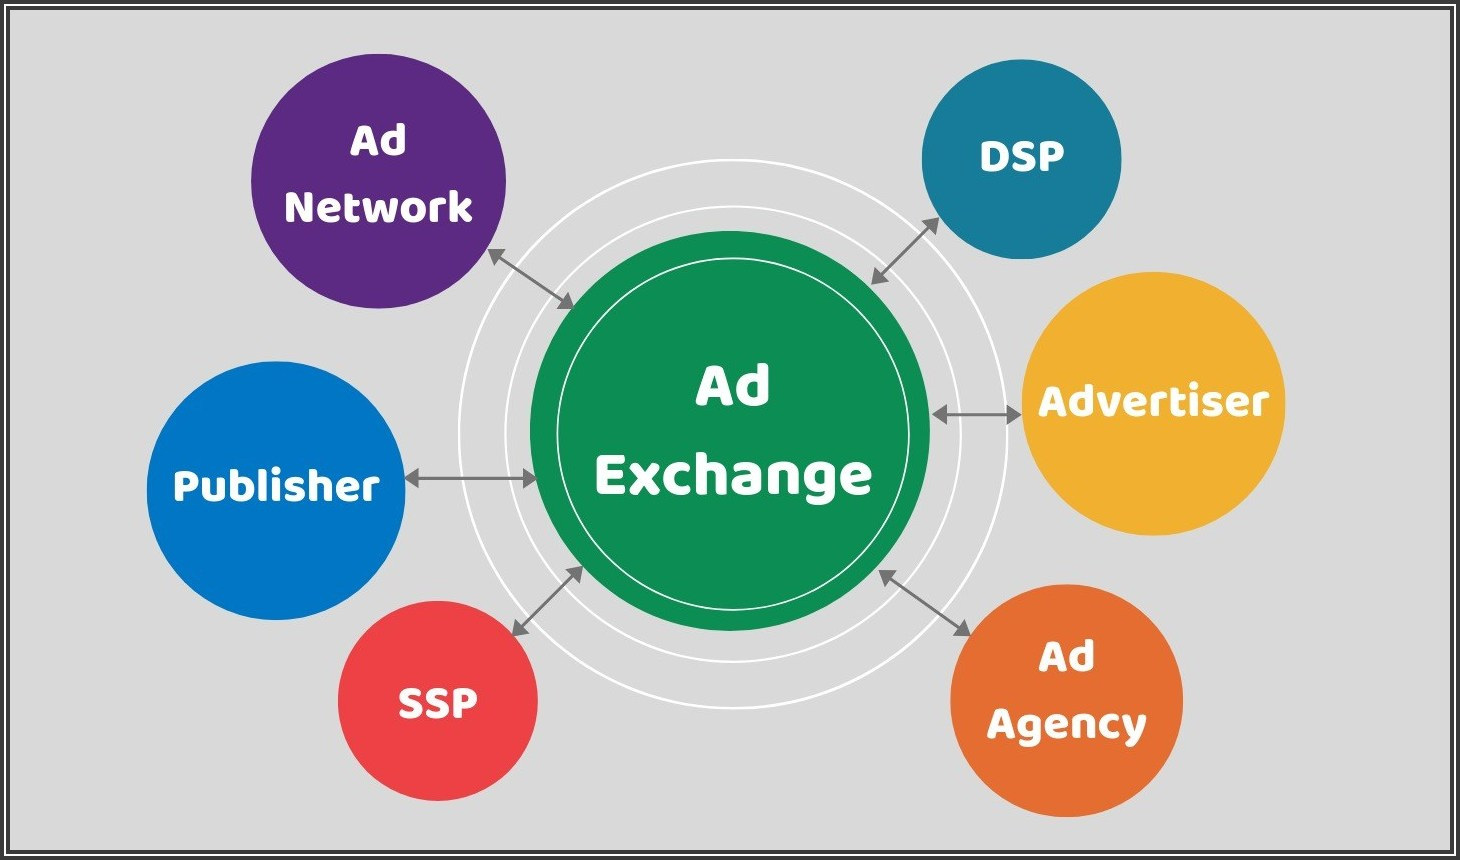 ¿Qué es un Ad Exchange?